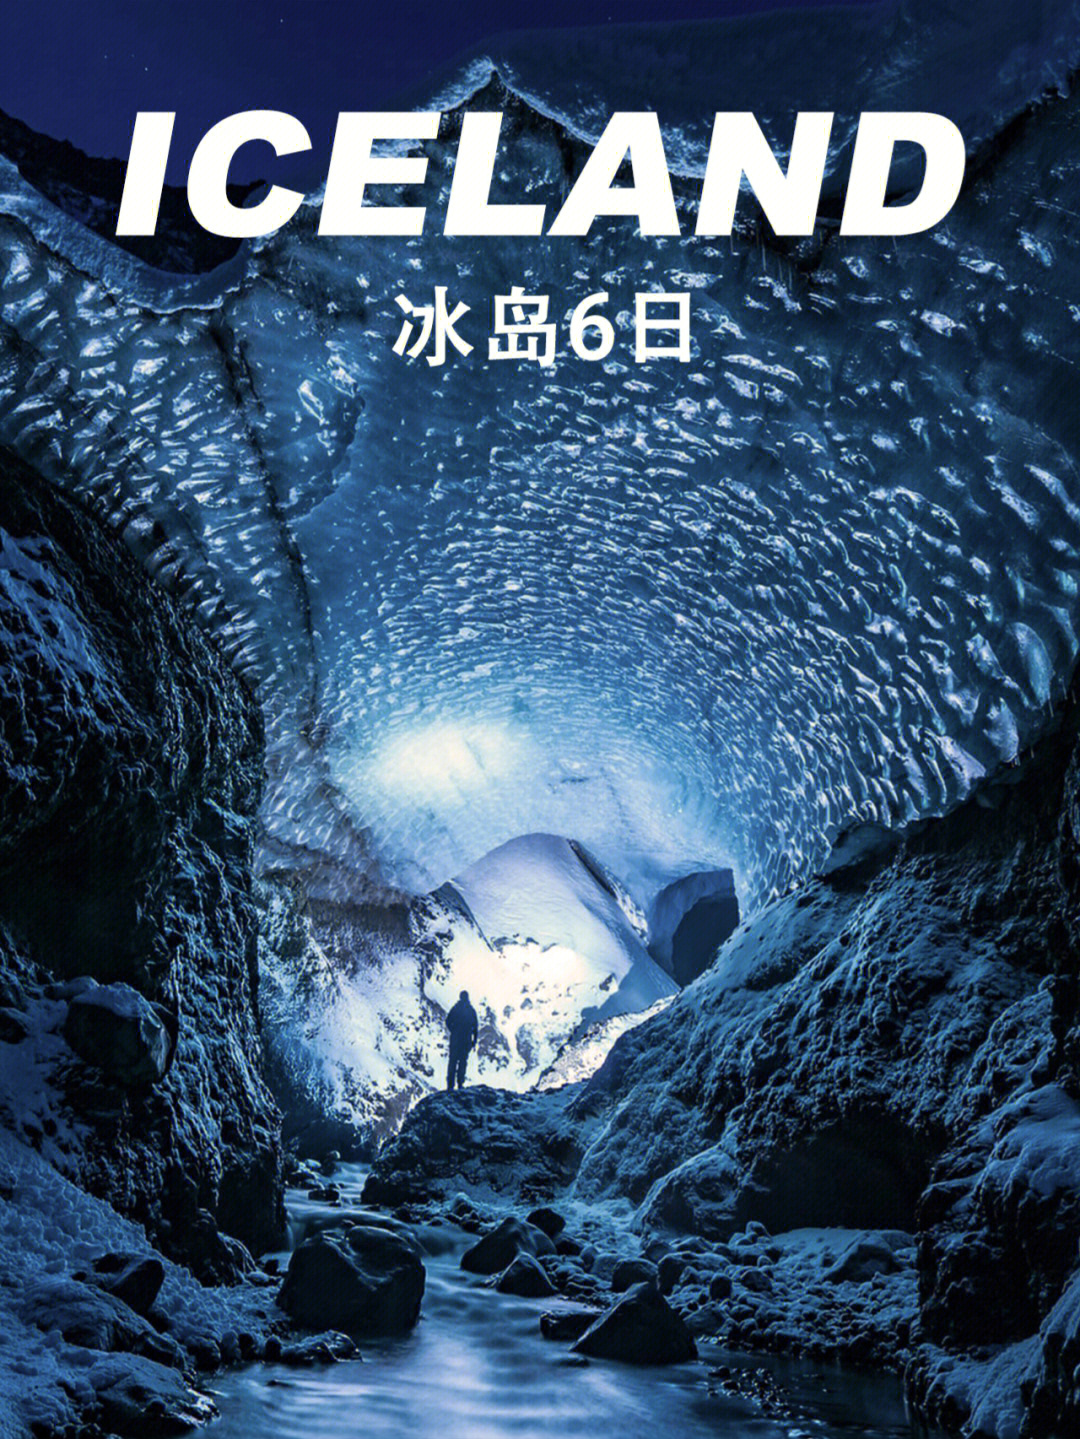 94这里是一个蓝色的世界,冰岛的冰之所以会是蓝色的,是因为冰的硬度